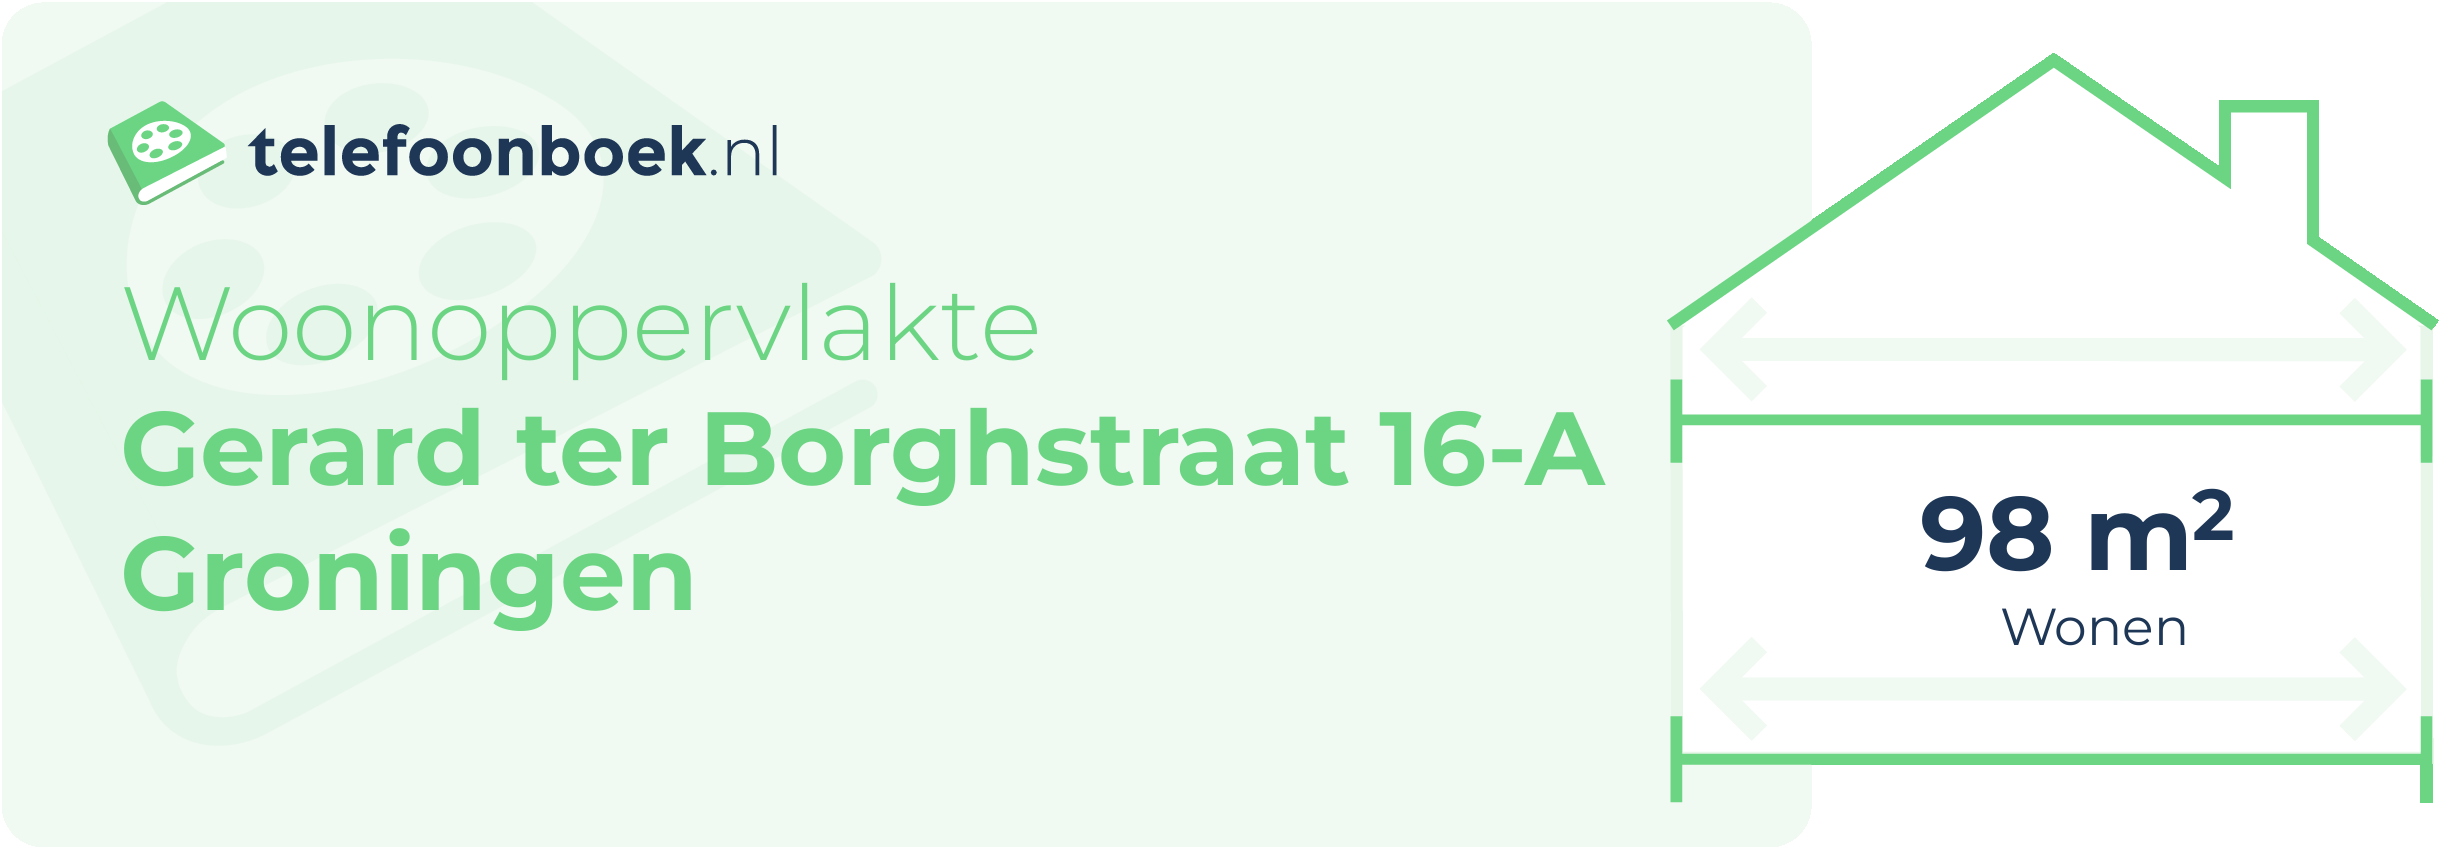 Woonoppervlakte Gerard Ter Borghstraat 16-A Groningen